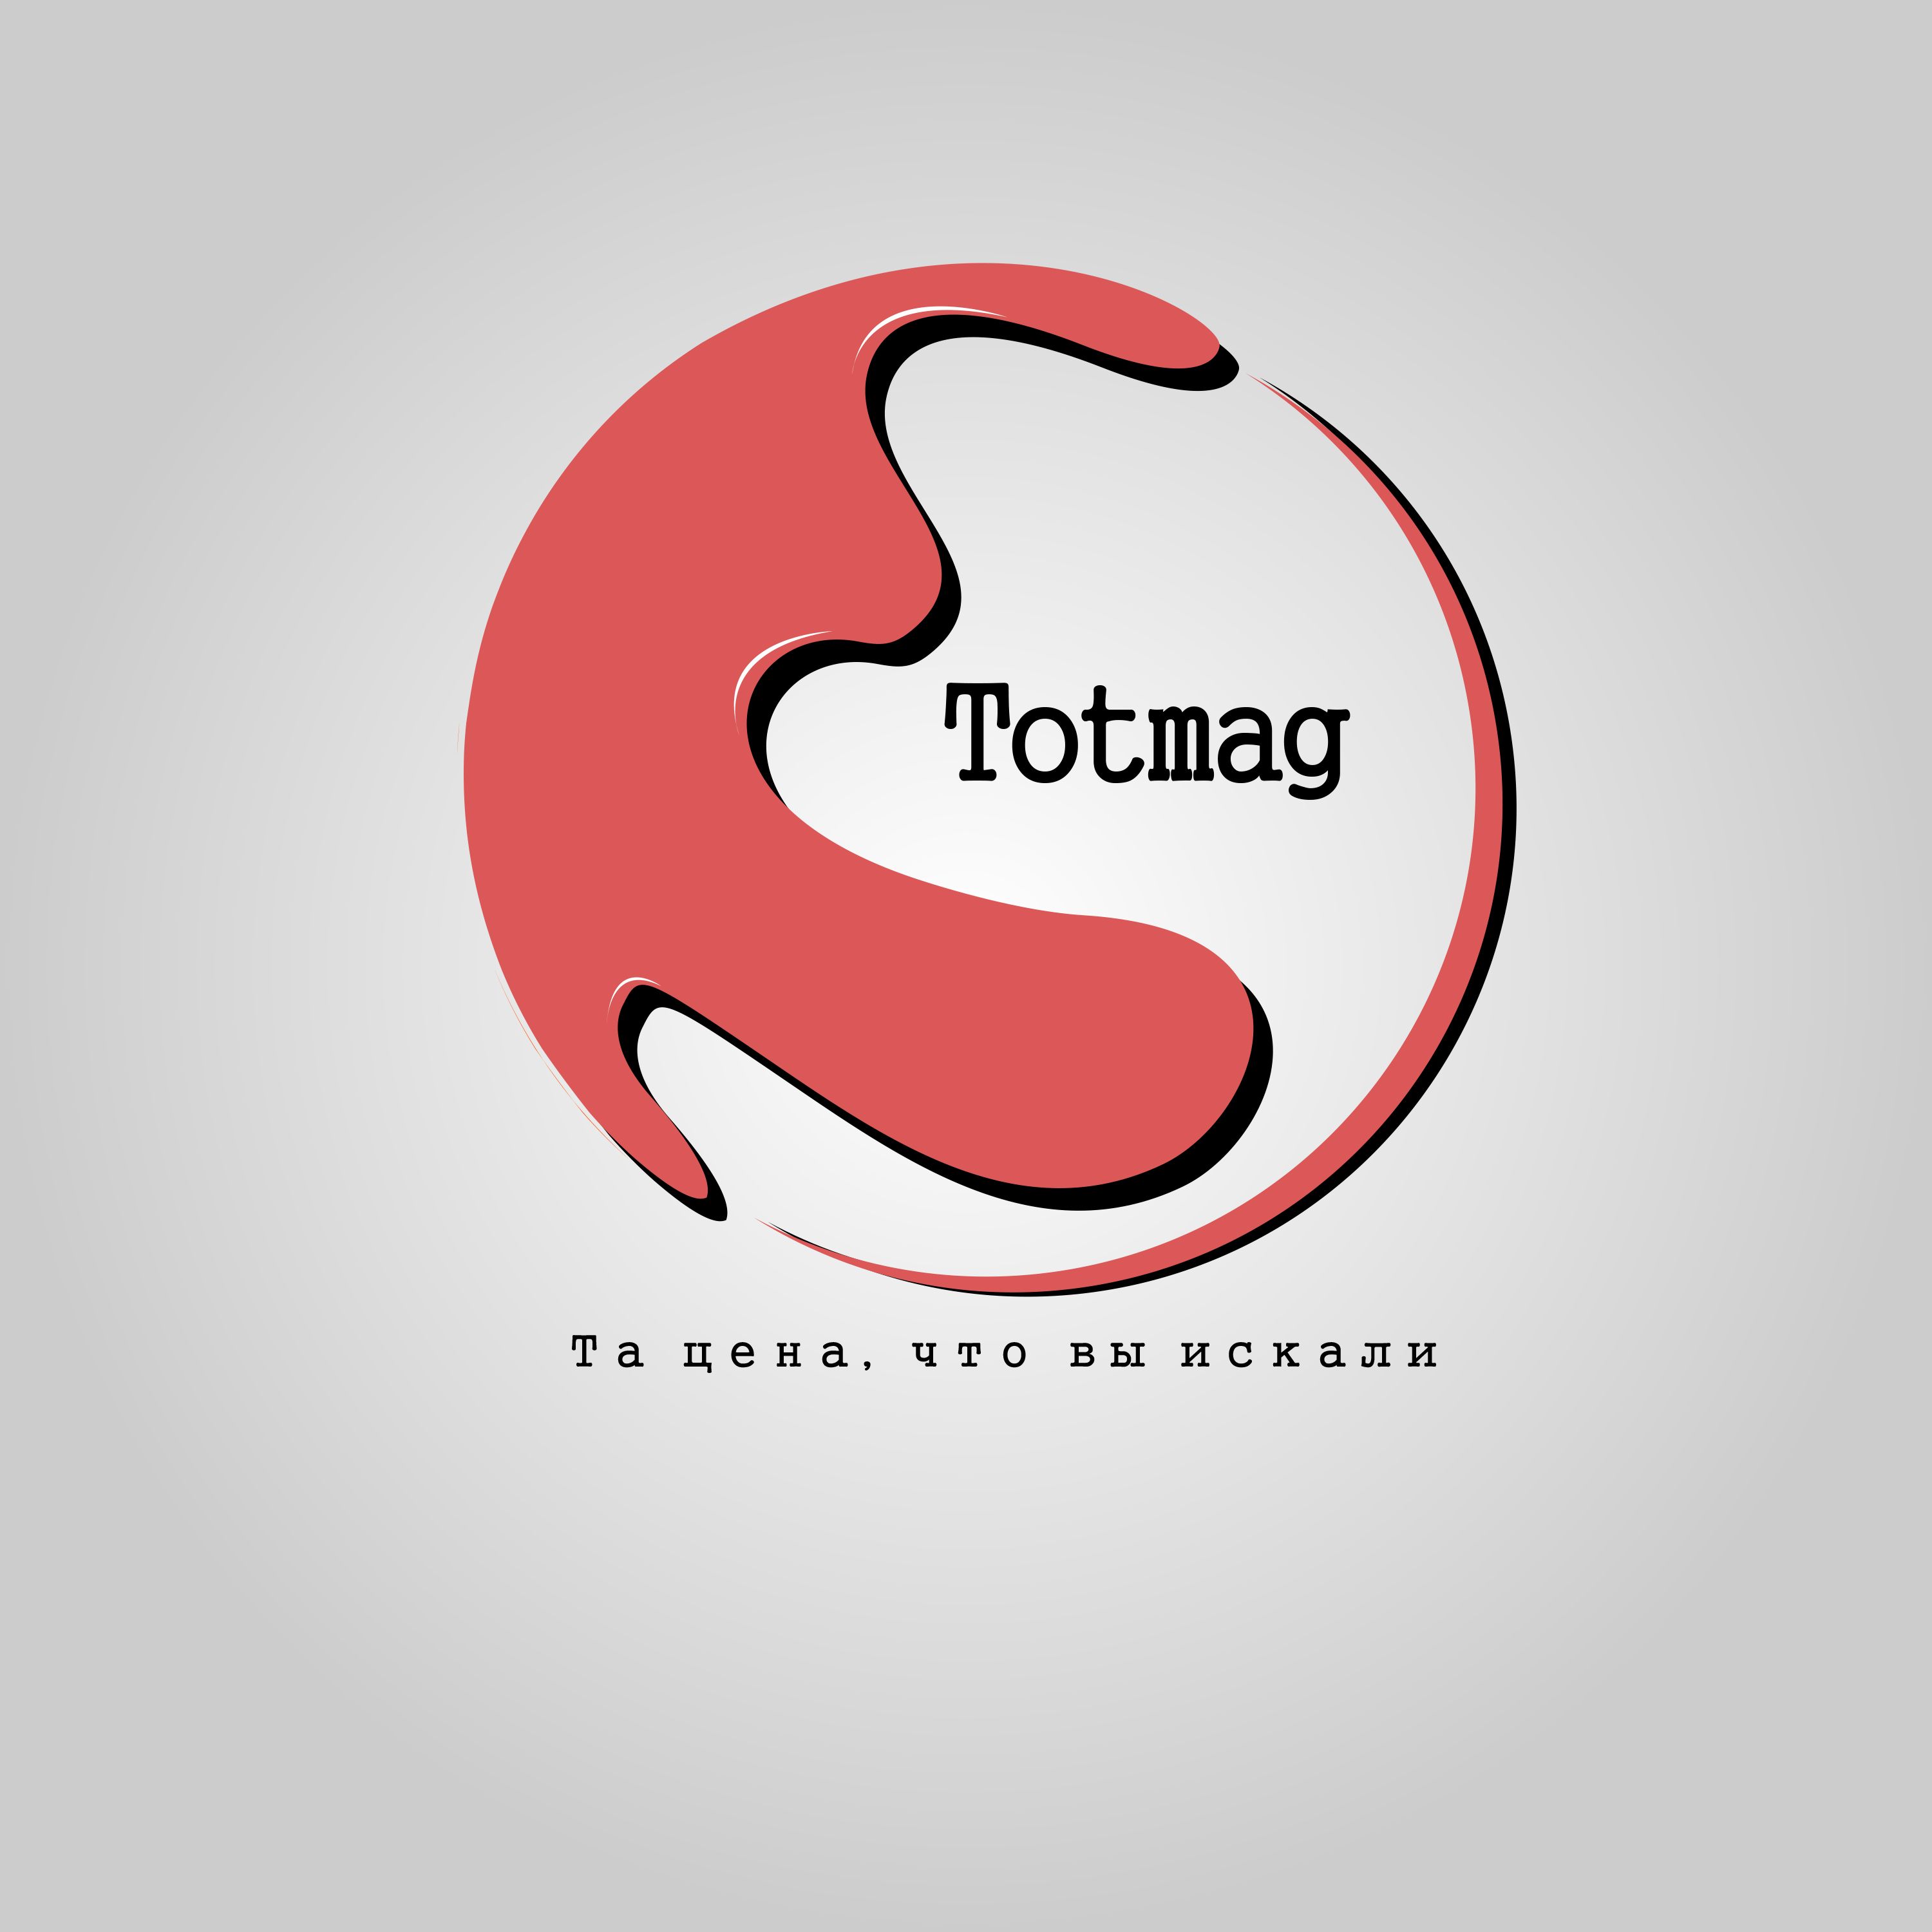 Логотип для интернет магазина totmag.ru - дизайнер Artfoth